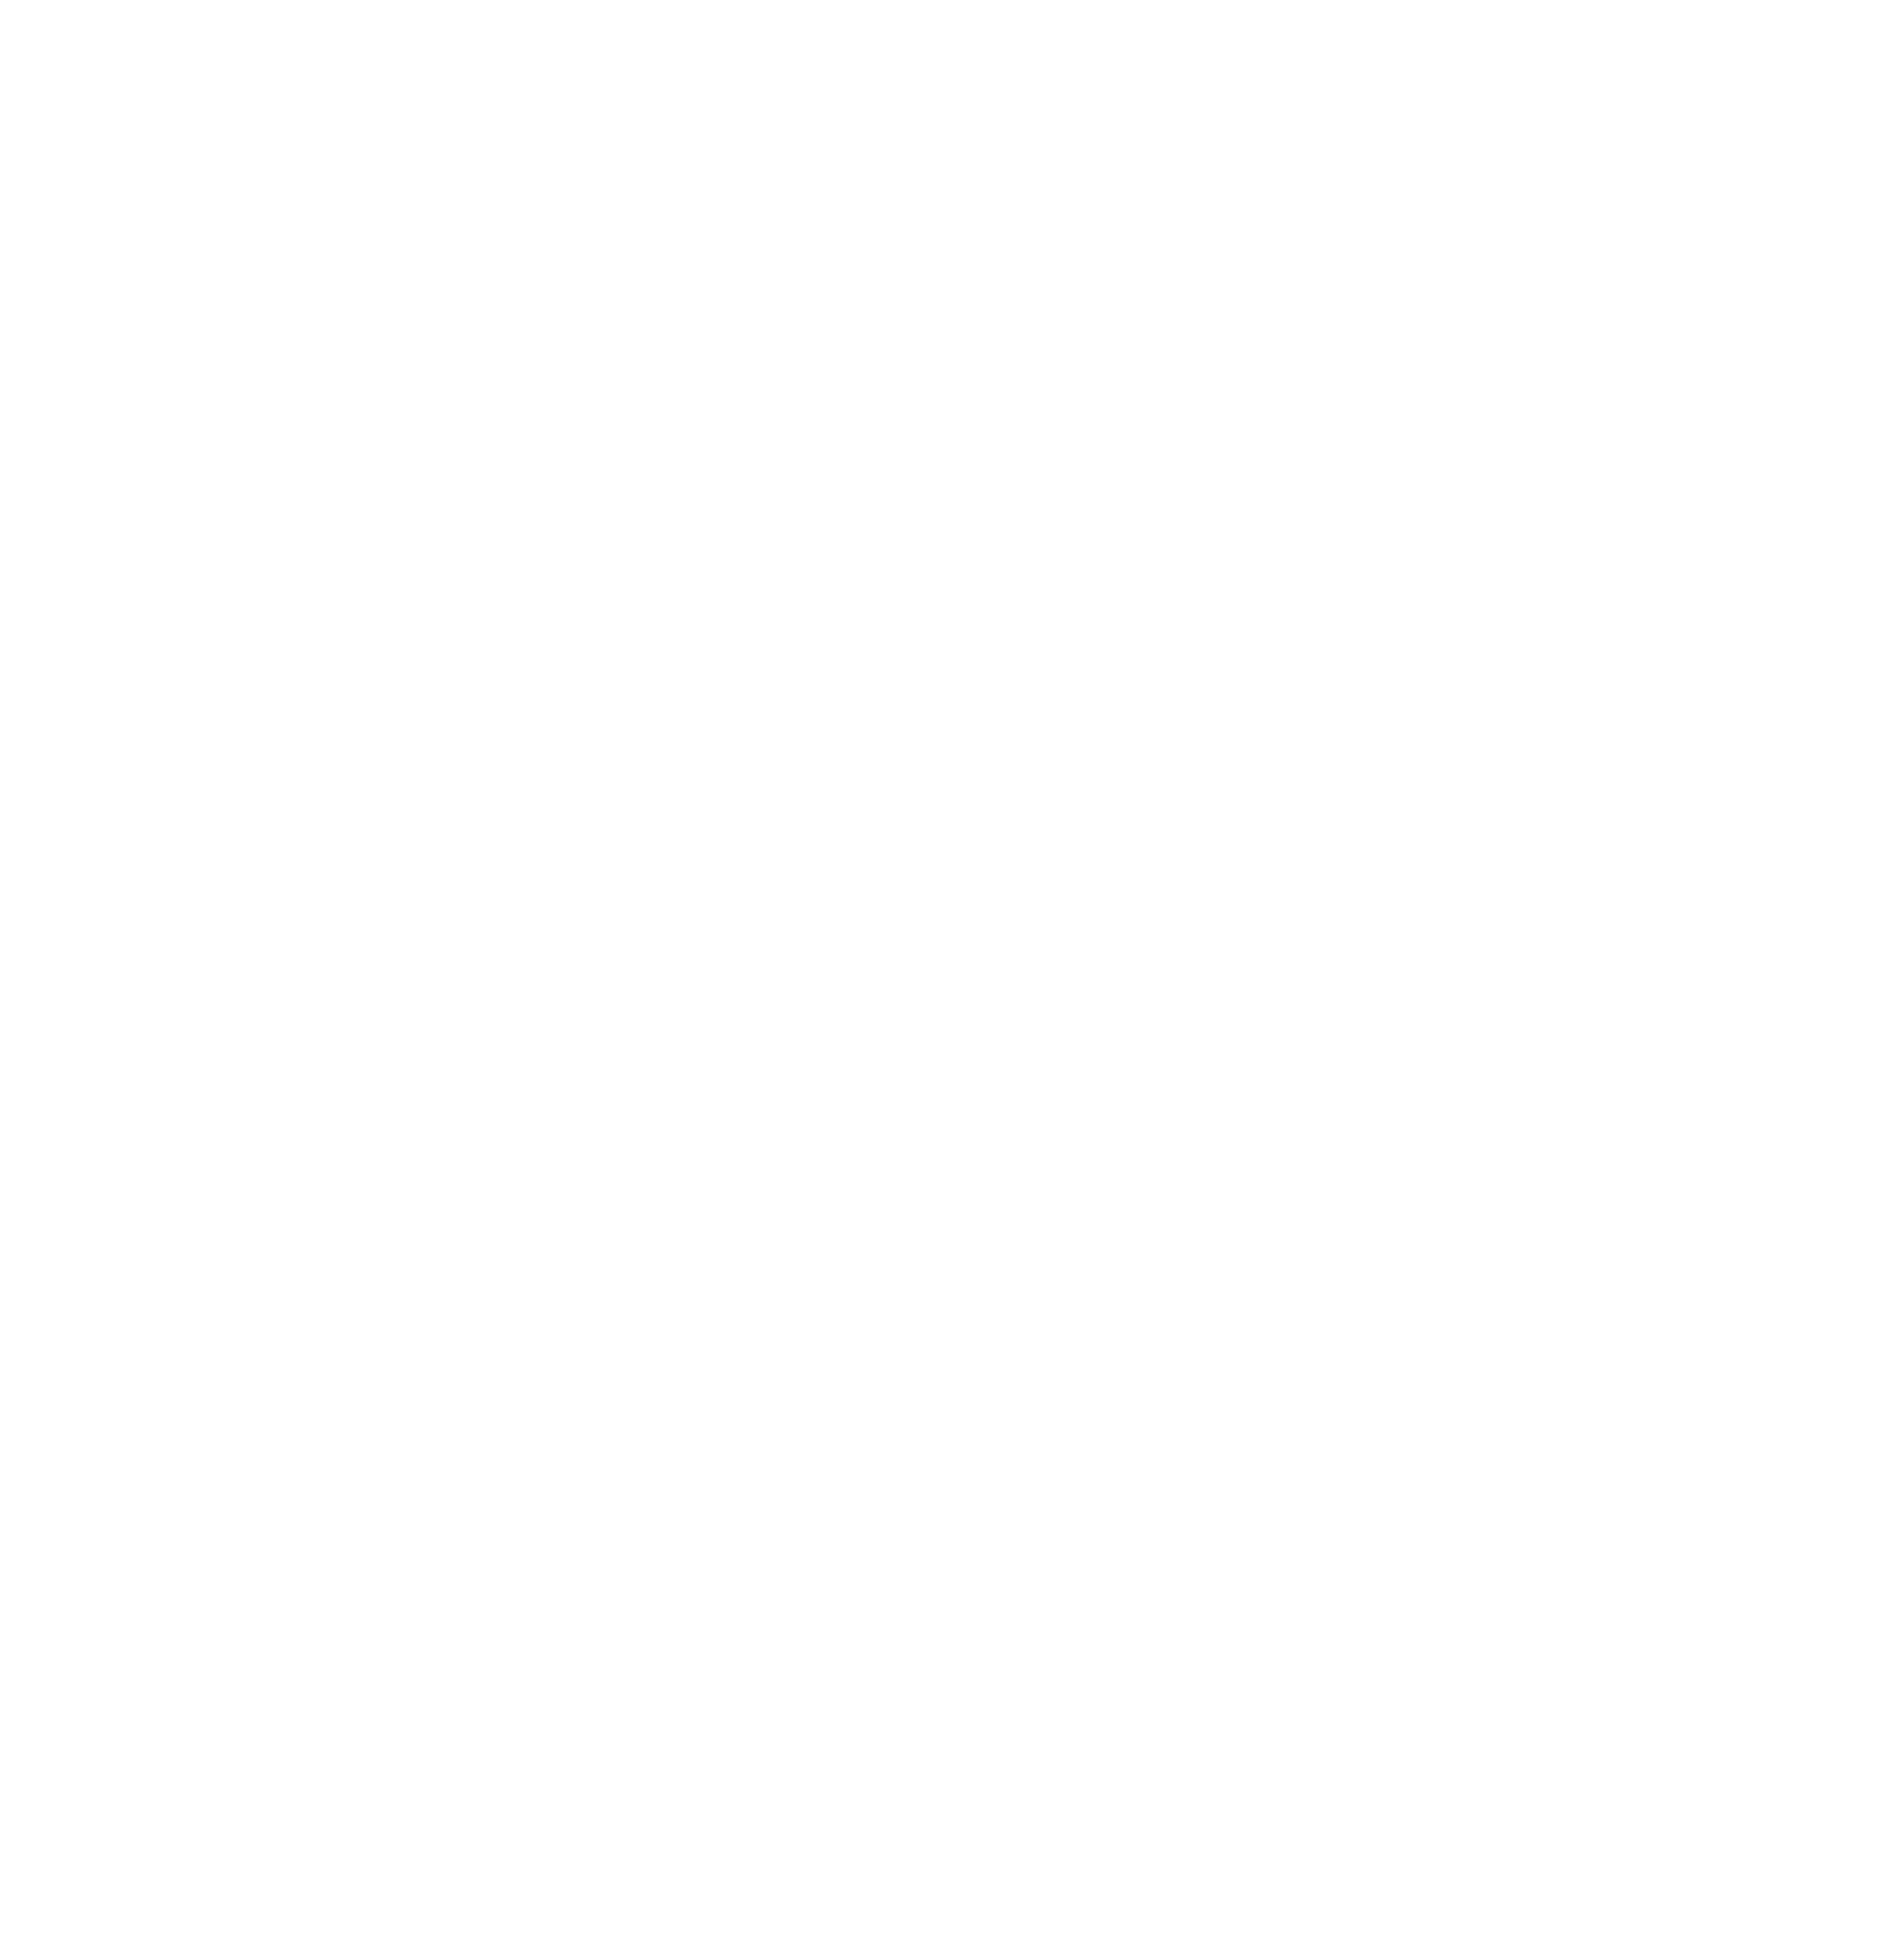 Logo S&L